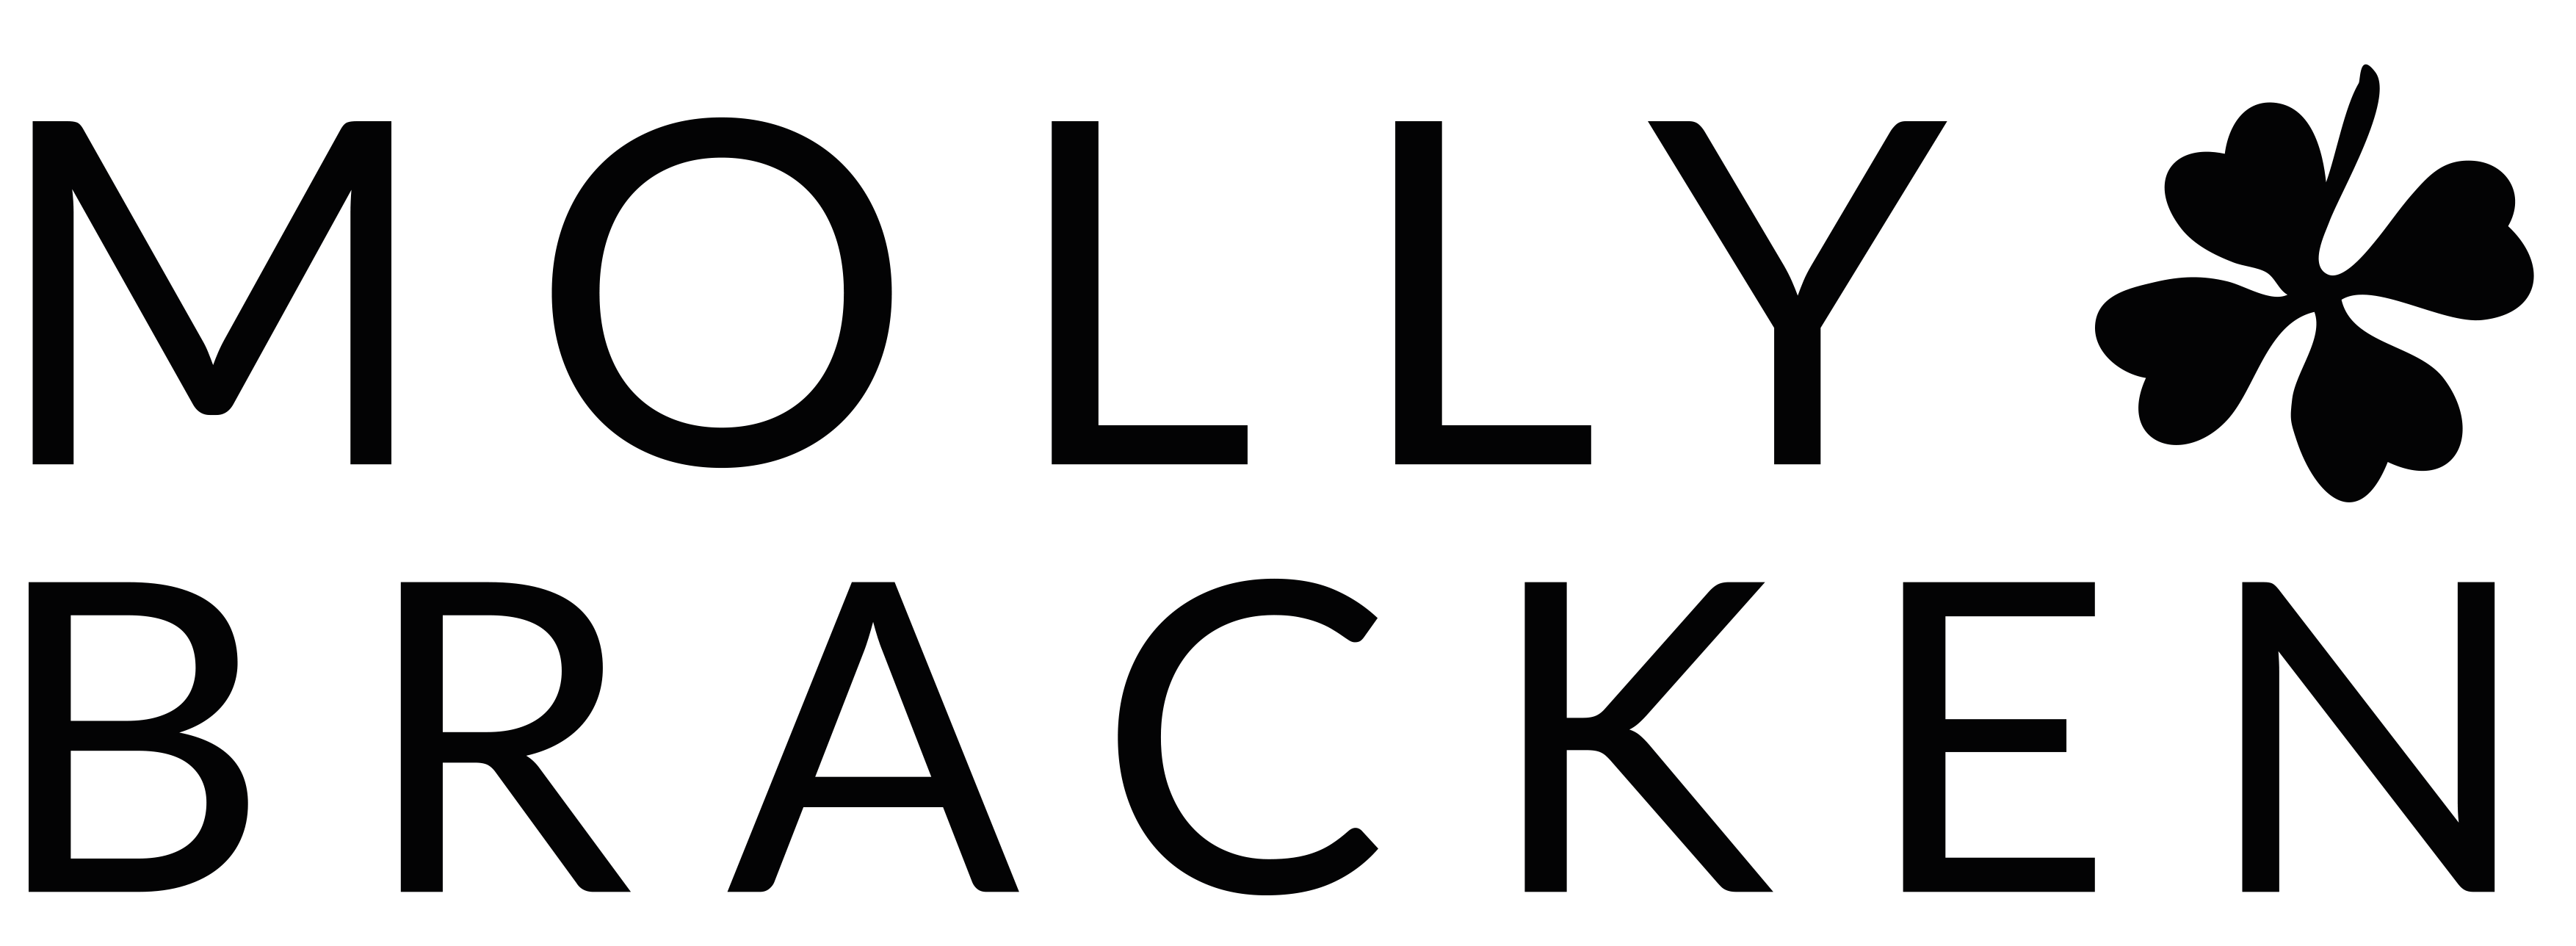 Molly bracken logo